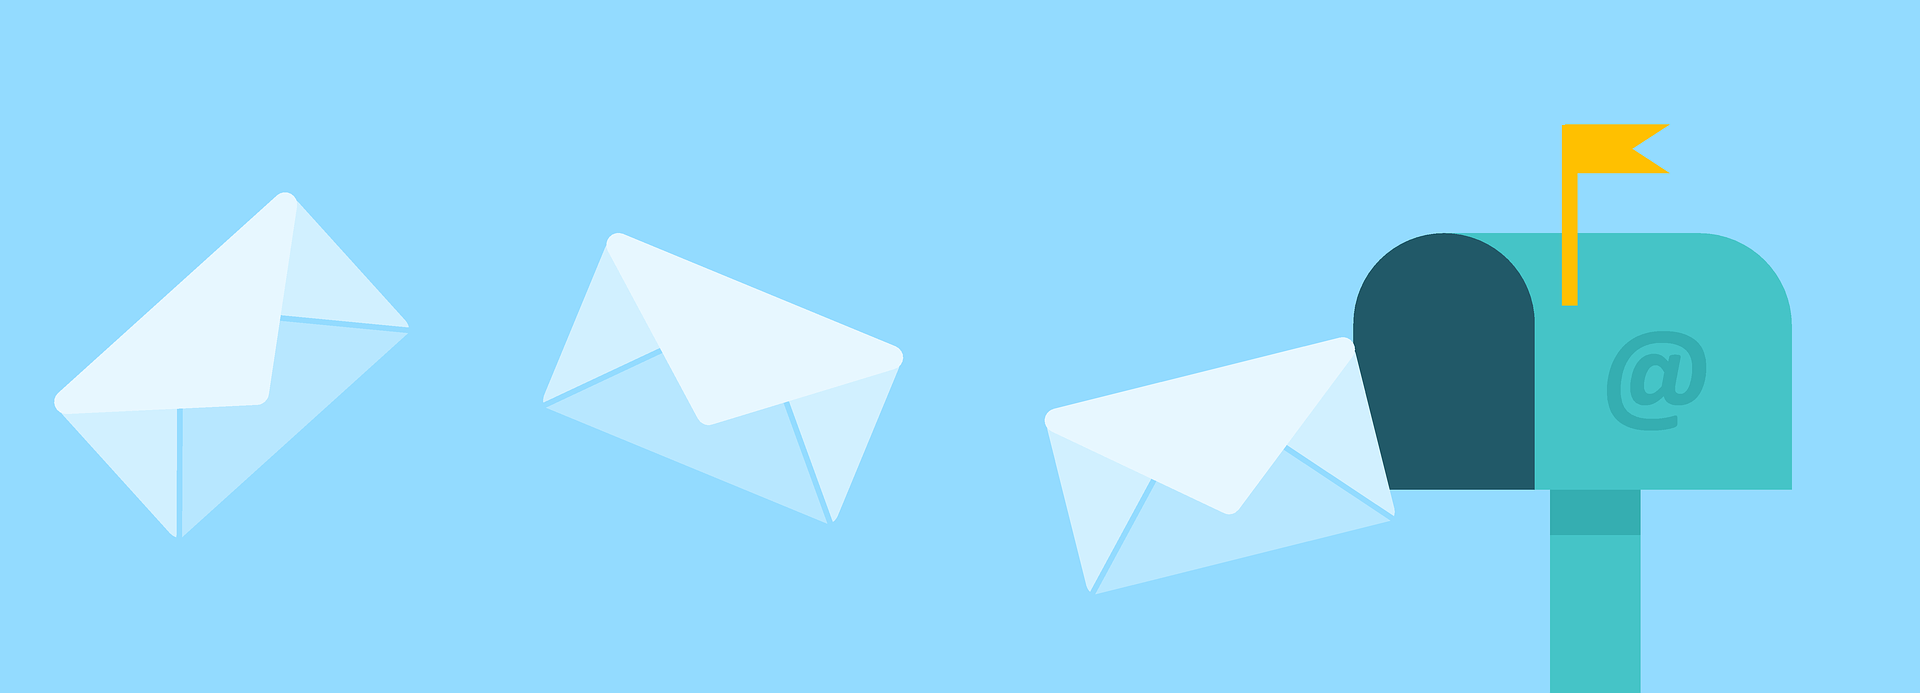 email mailbox online marketing